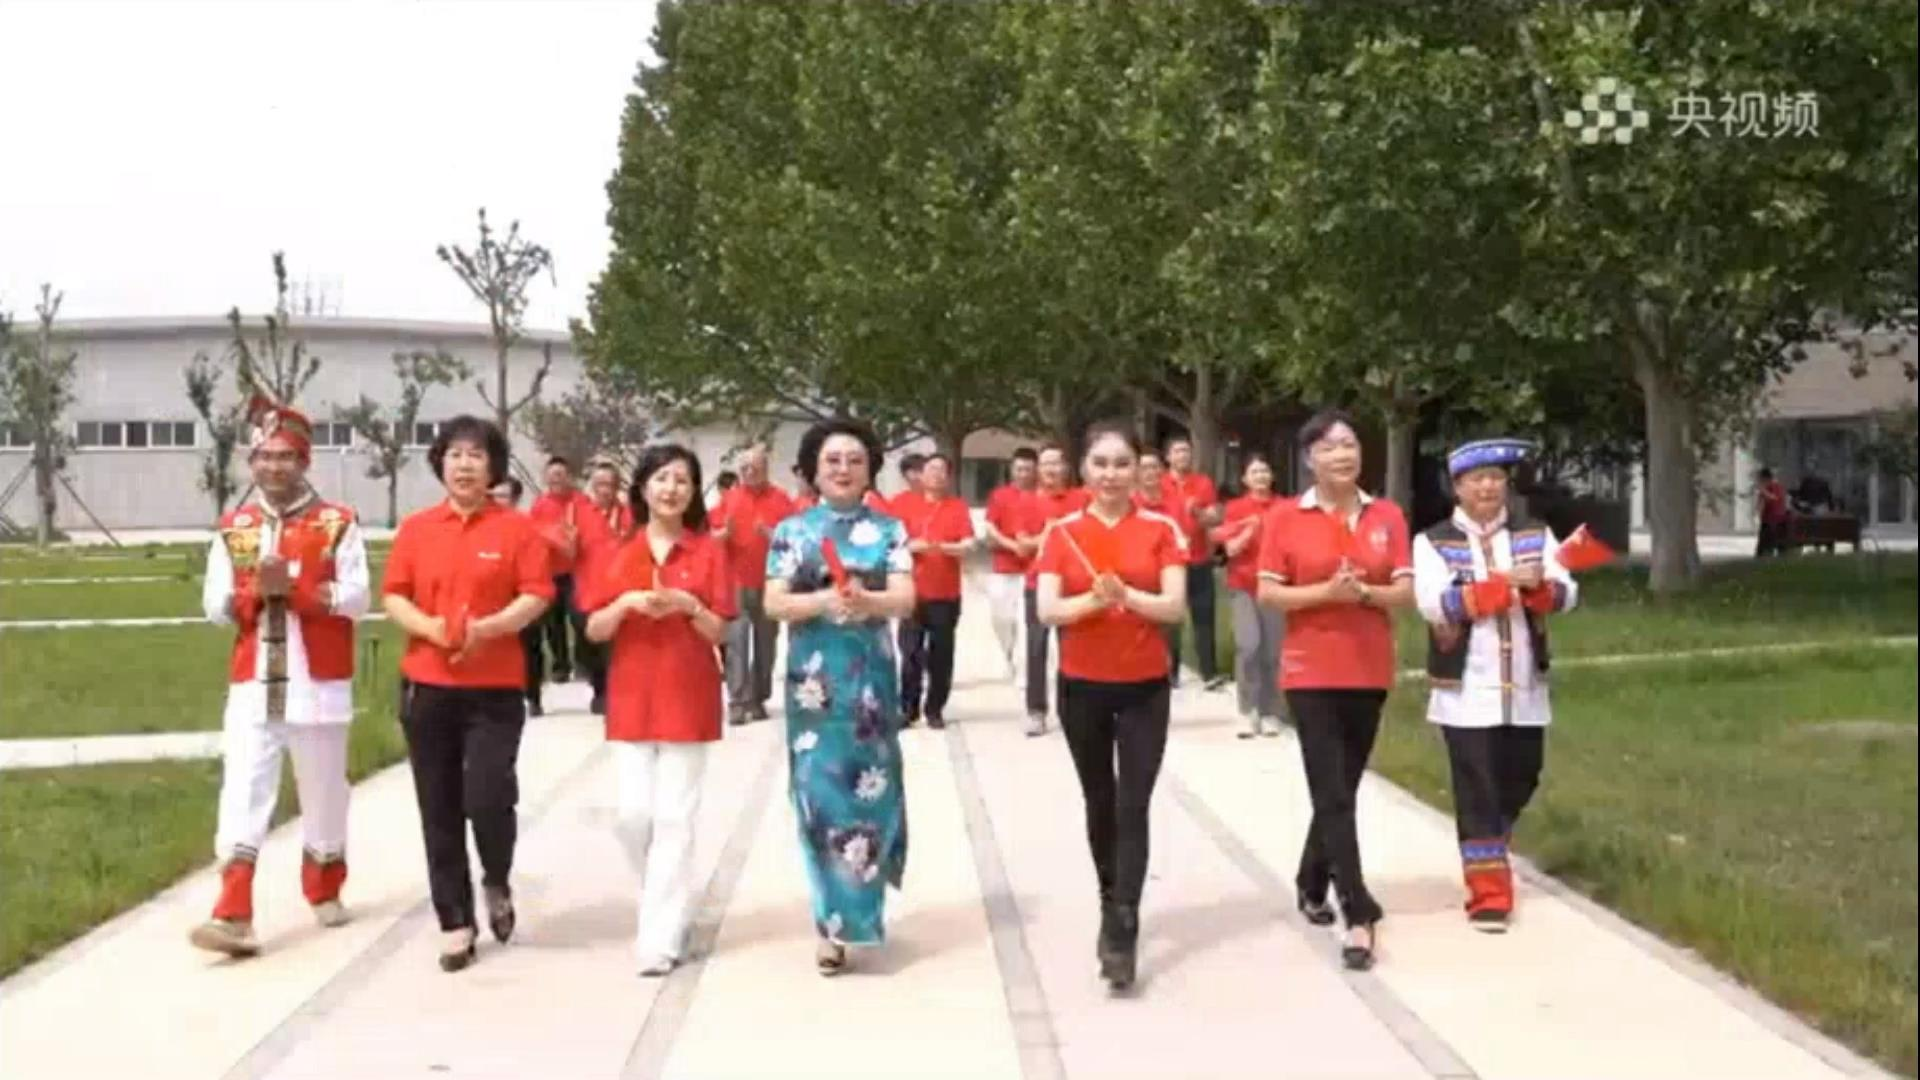 闫志军代表公司参与录制央视“民企跟党走、颂歌献祖国”节目